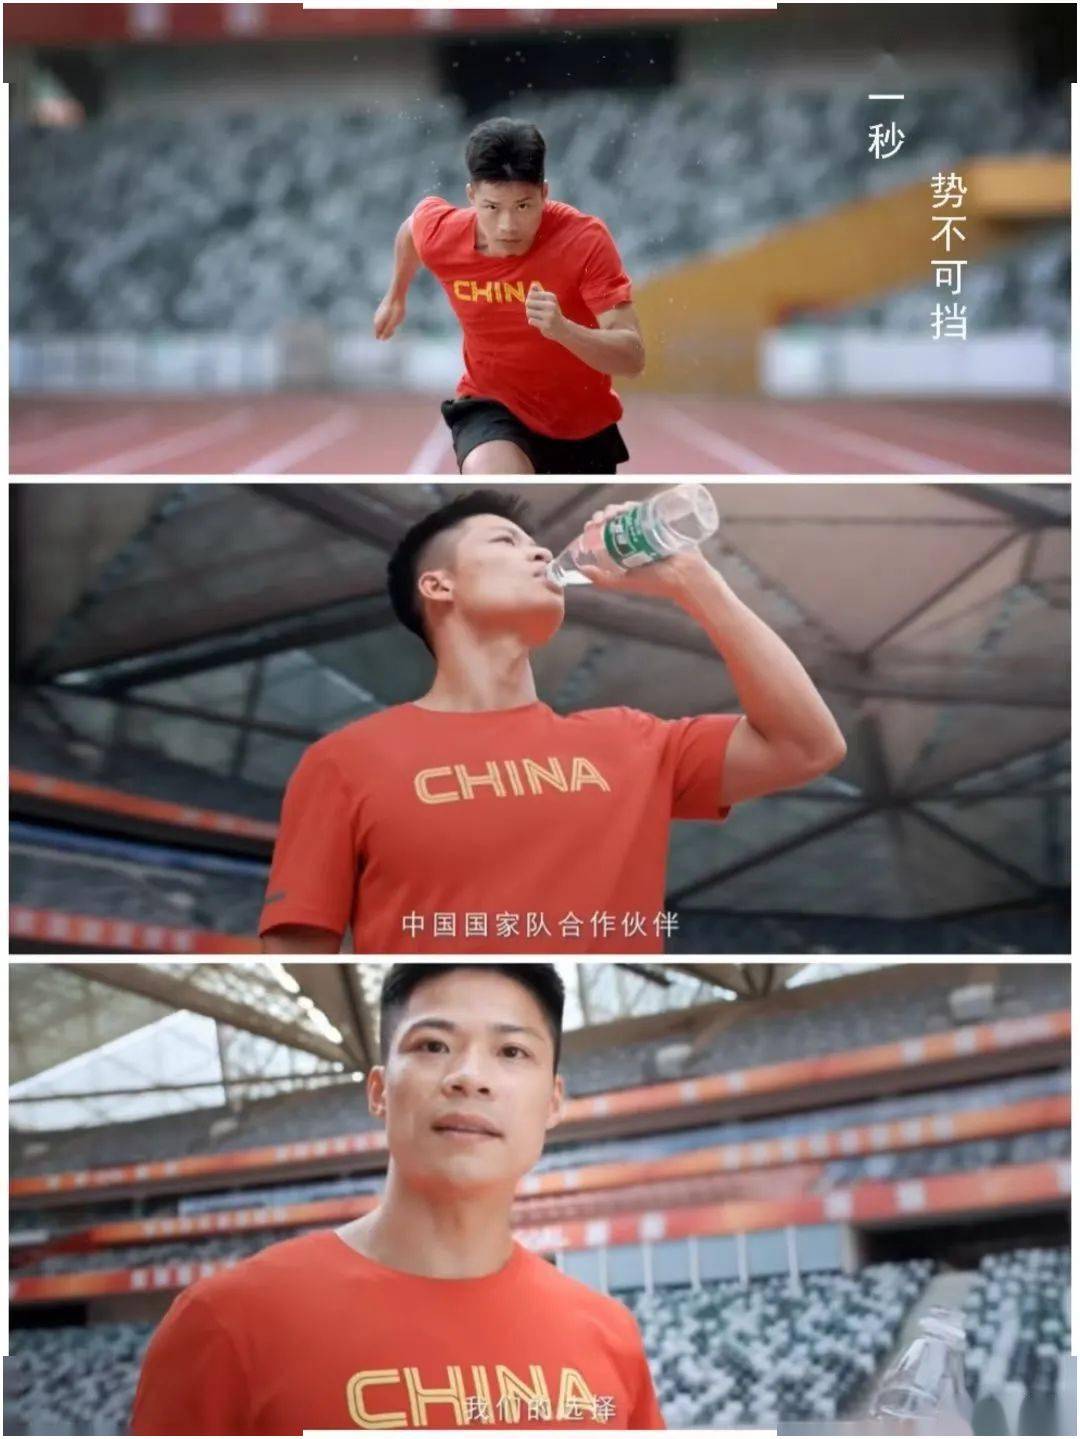 苏炳添也成为了东京奥运会周期华润怡宝广告的主要形象担当